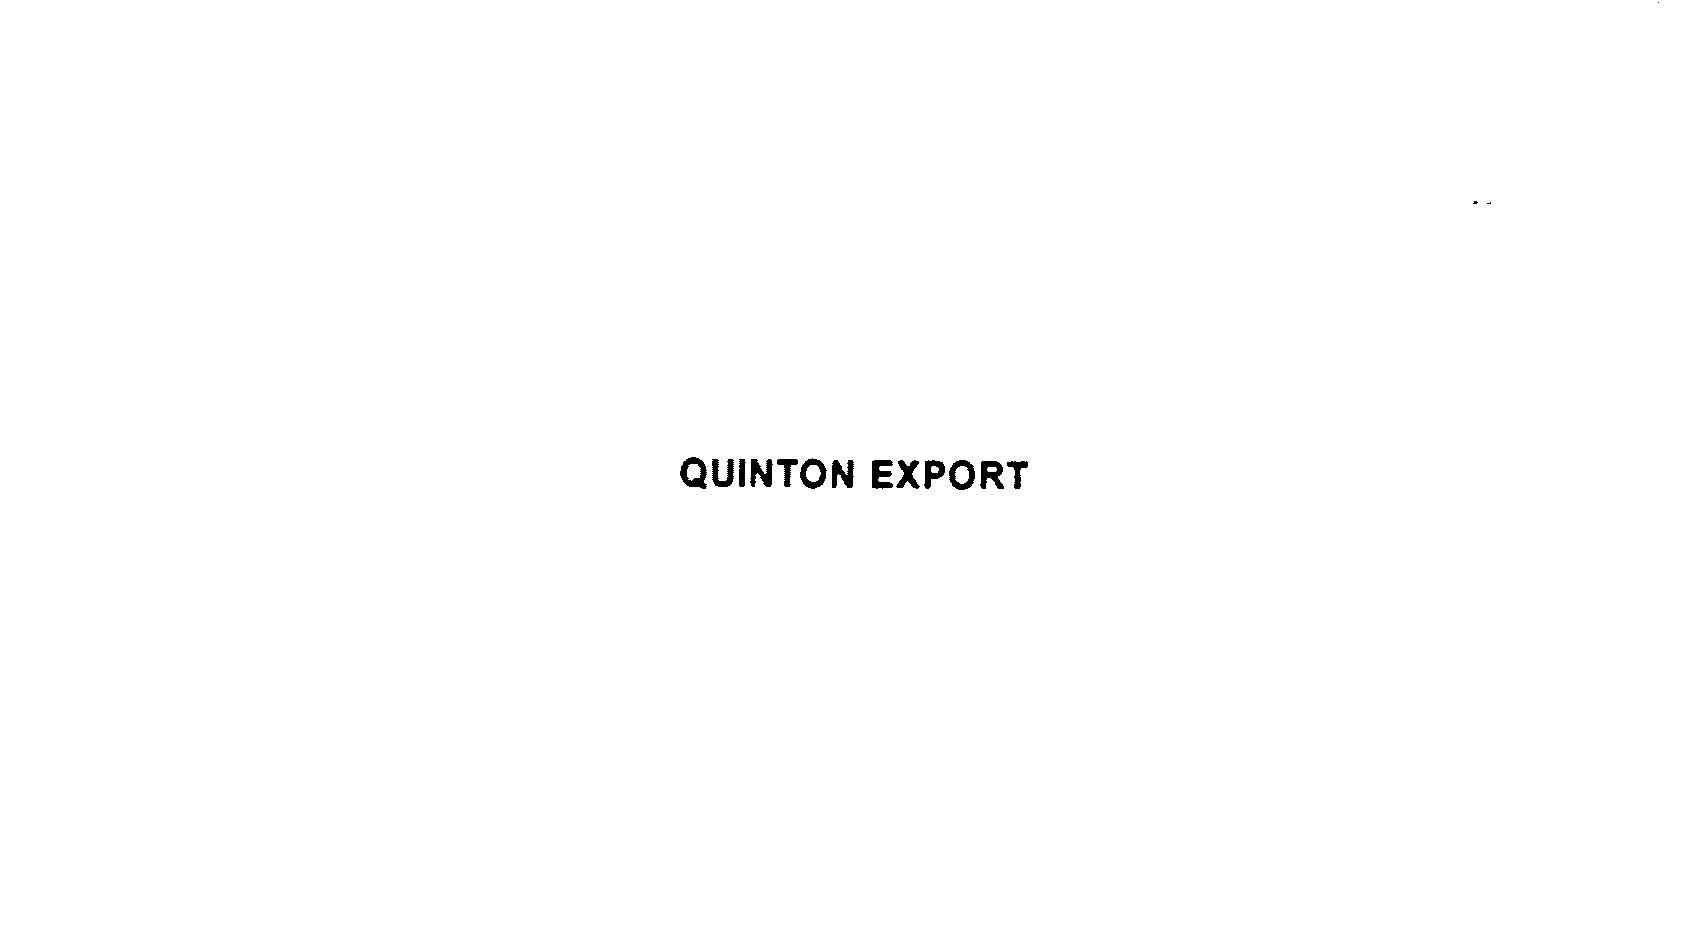  QUINTON EXPORT